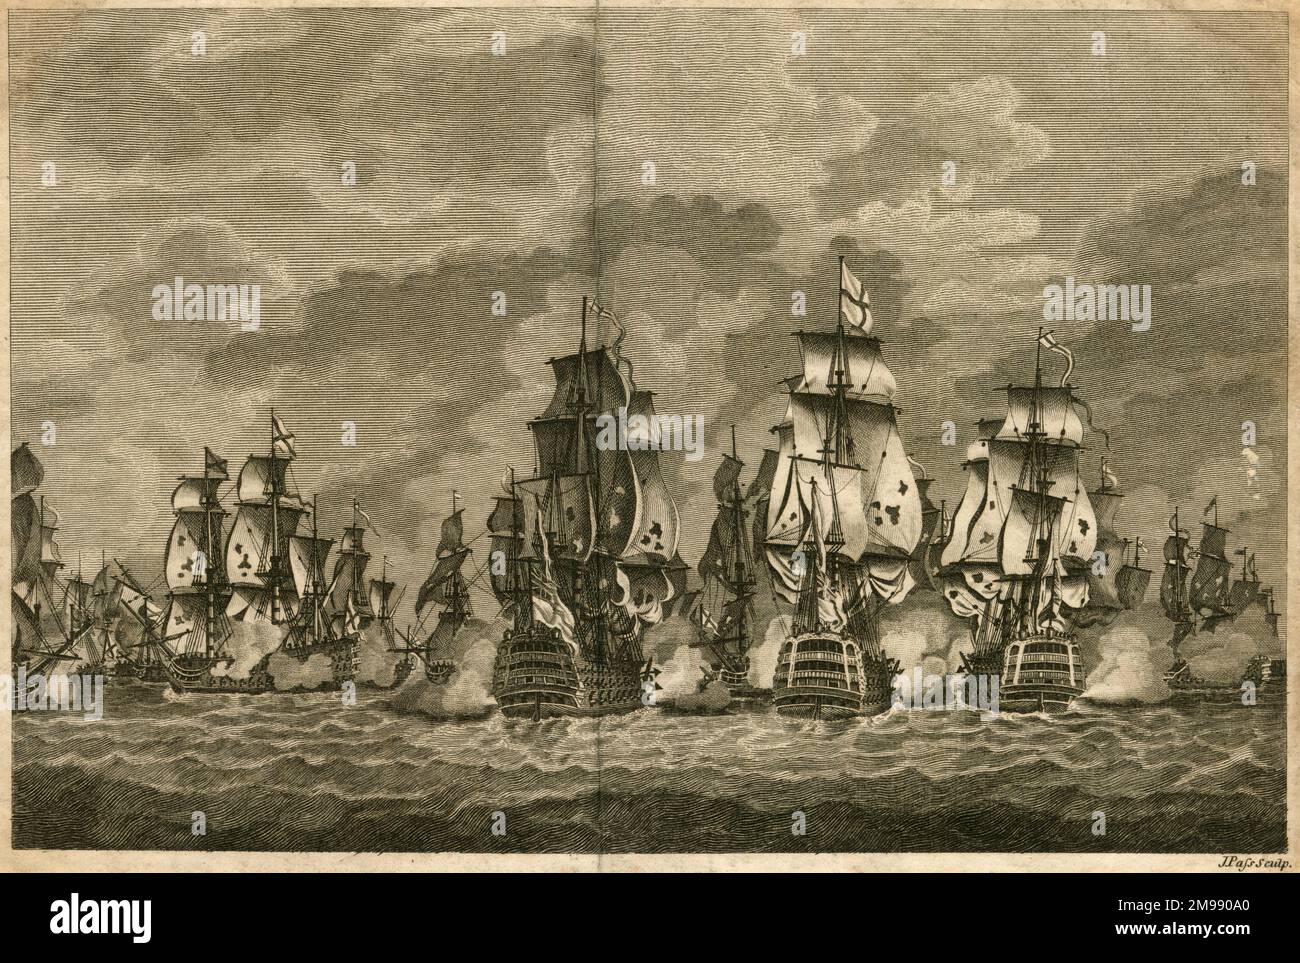 Niederlage der spanischen Flotte durch Sir John Jervis, Schlacht von Cape St. Vincent, 14. Februar 1797. Stockfoto